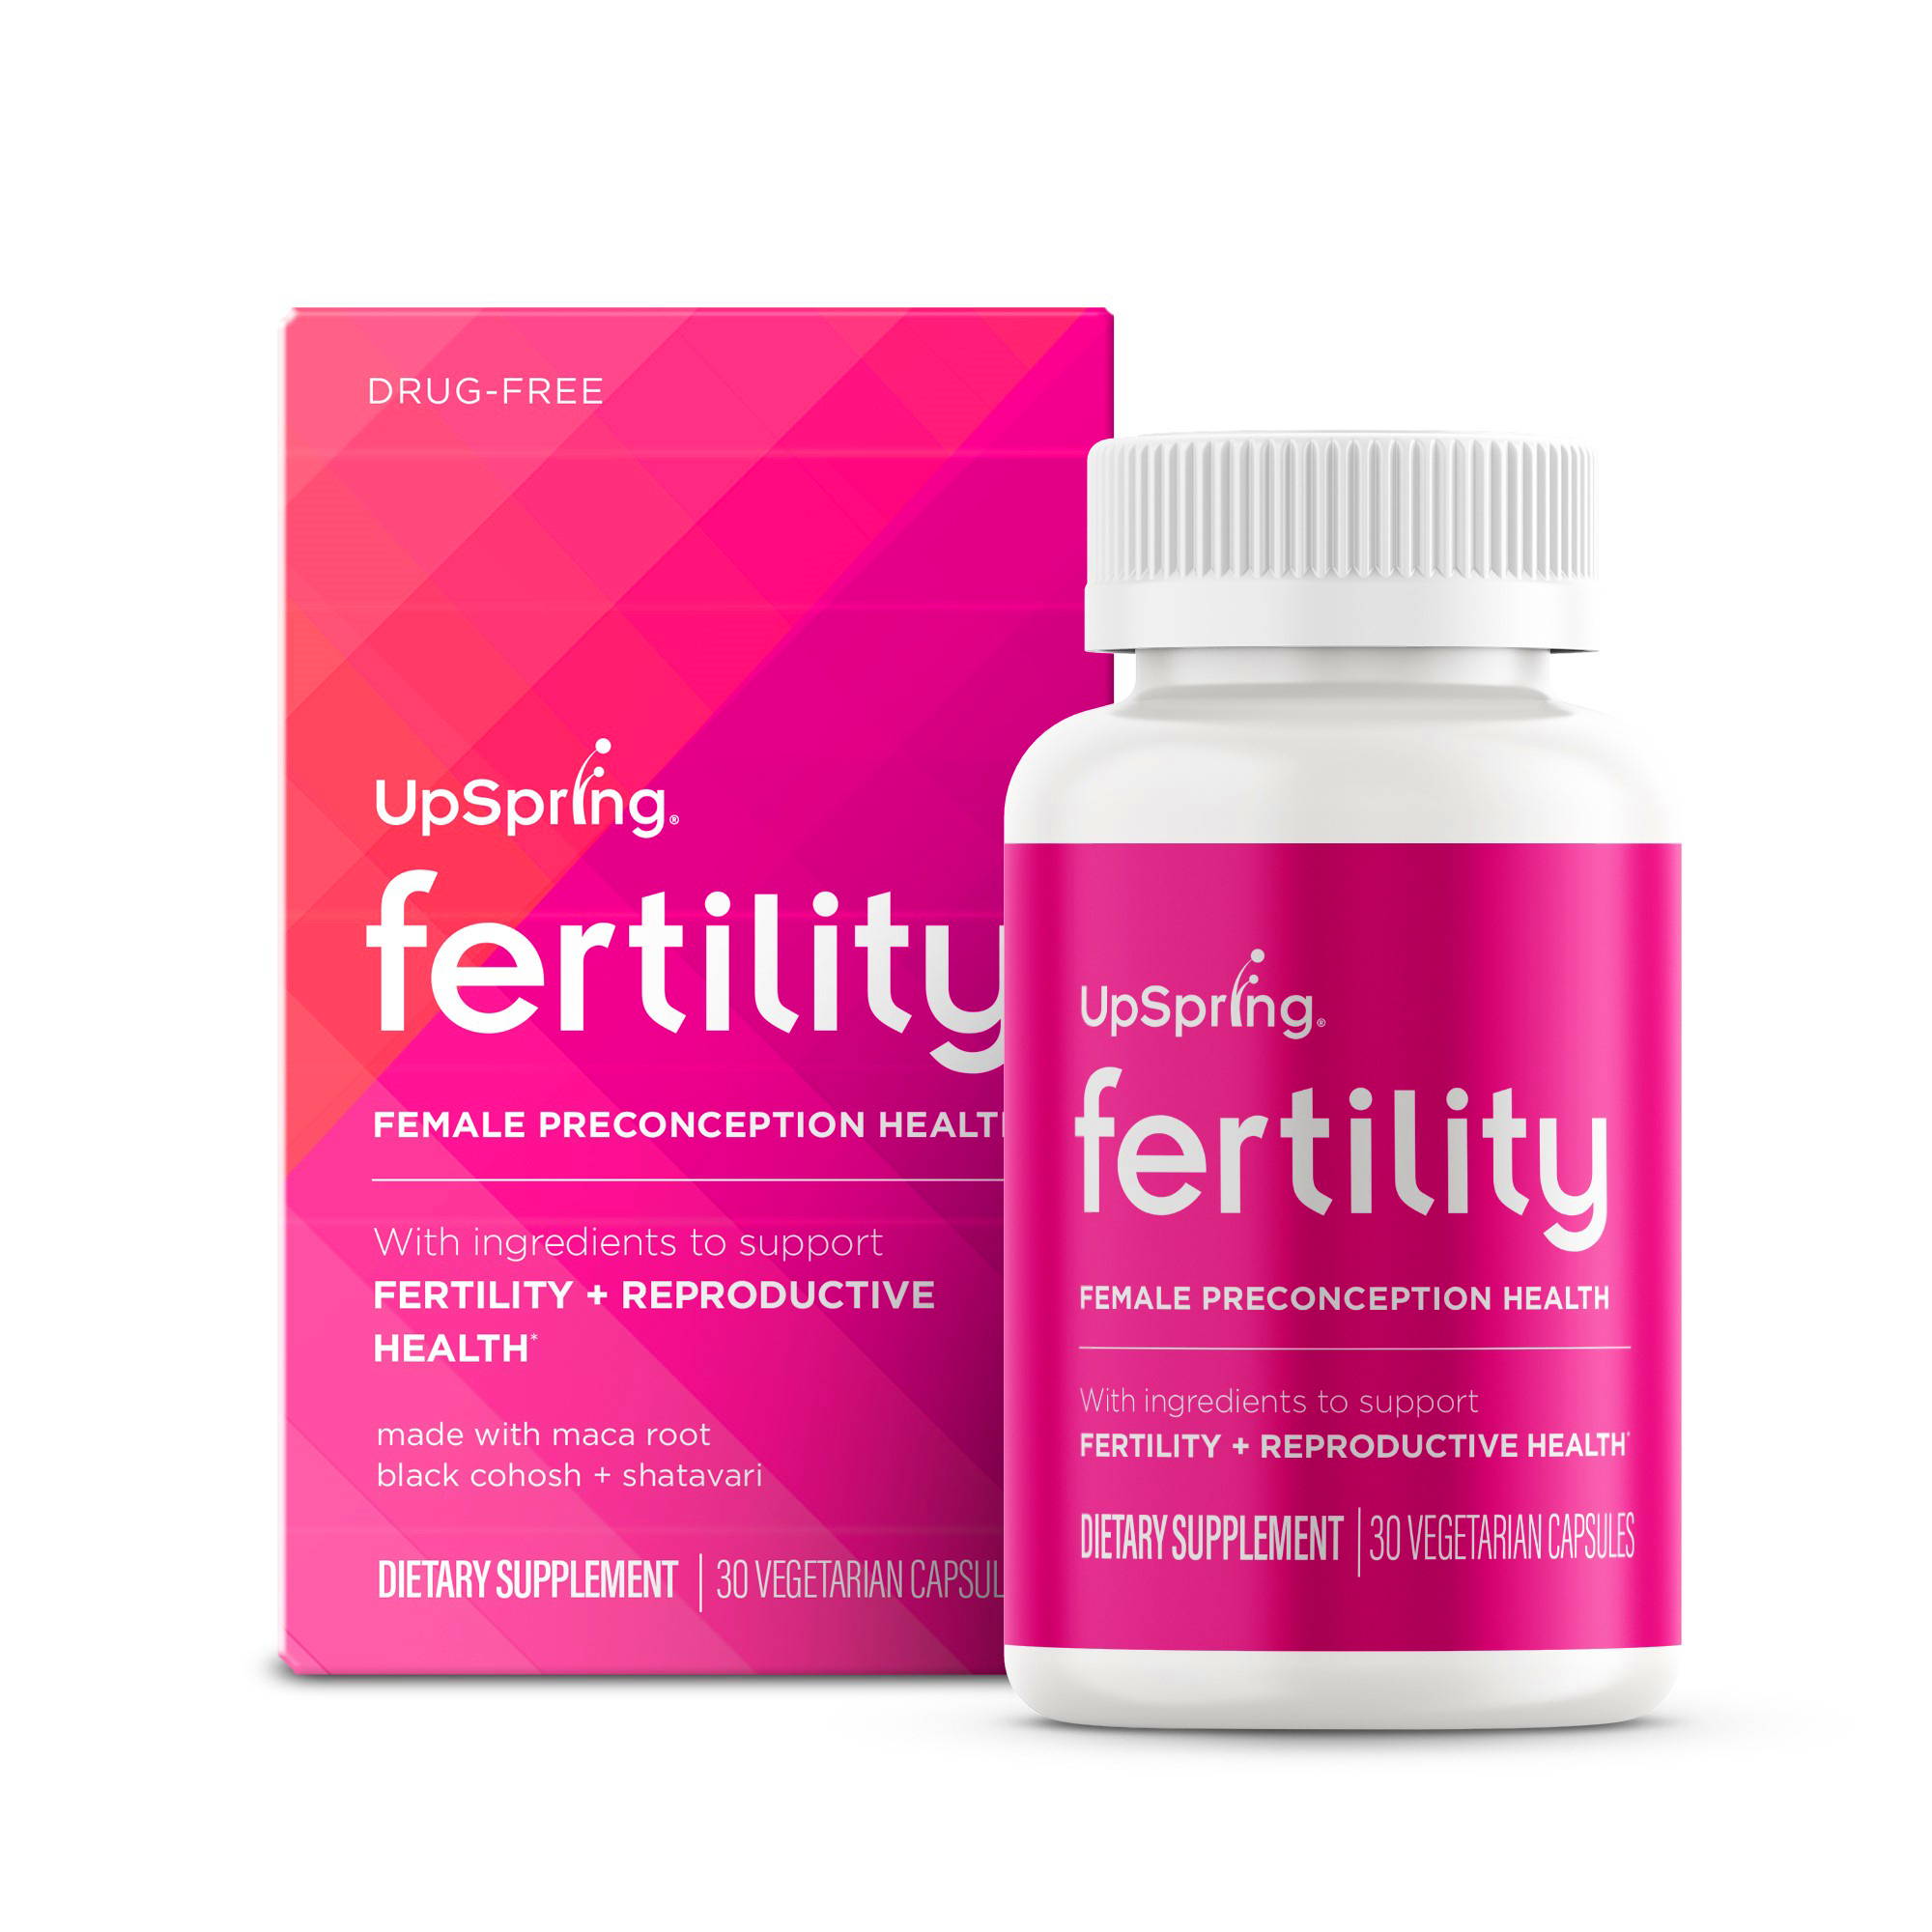 Upspring fertility pills